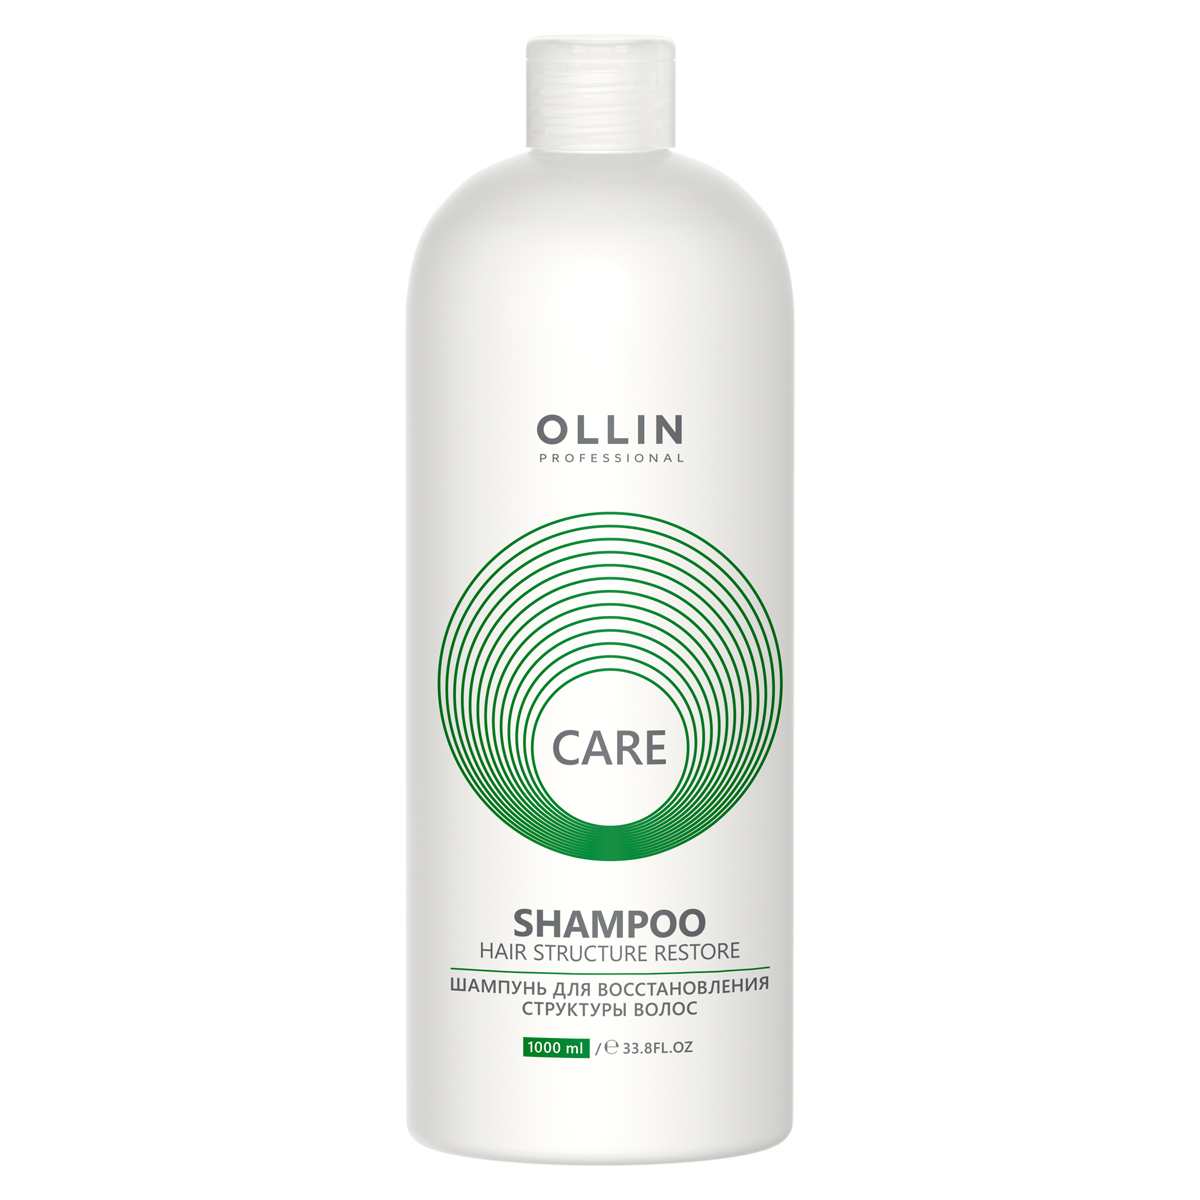 Ollin Professional Шампунь для восстановления структуры волос, 1000 мл (Ollin Professional, Care) шампунь для восстановления структуры волос ollin professional care 1000 мл